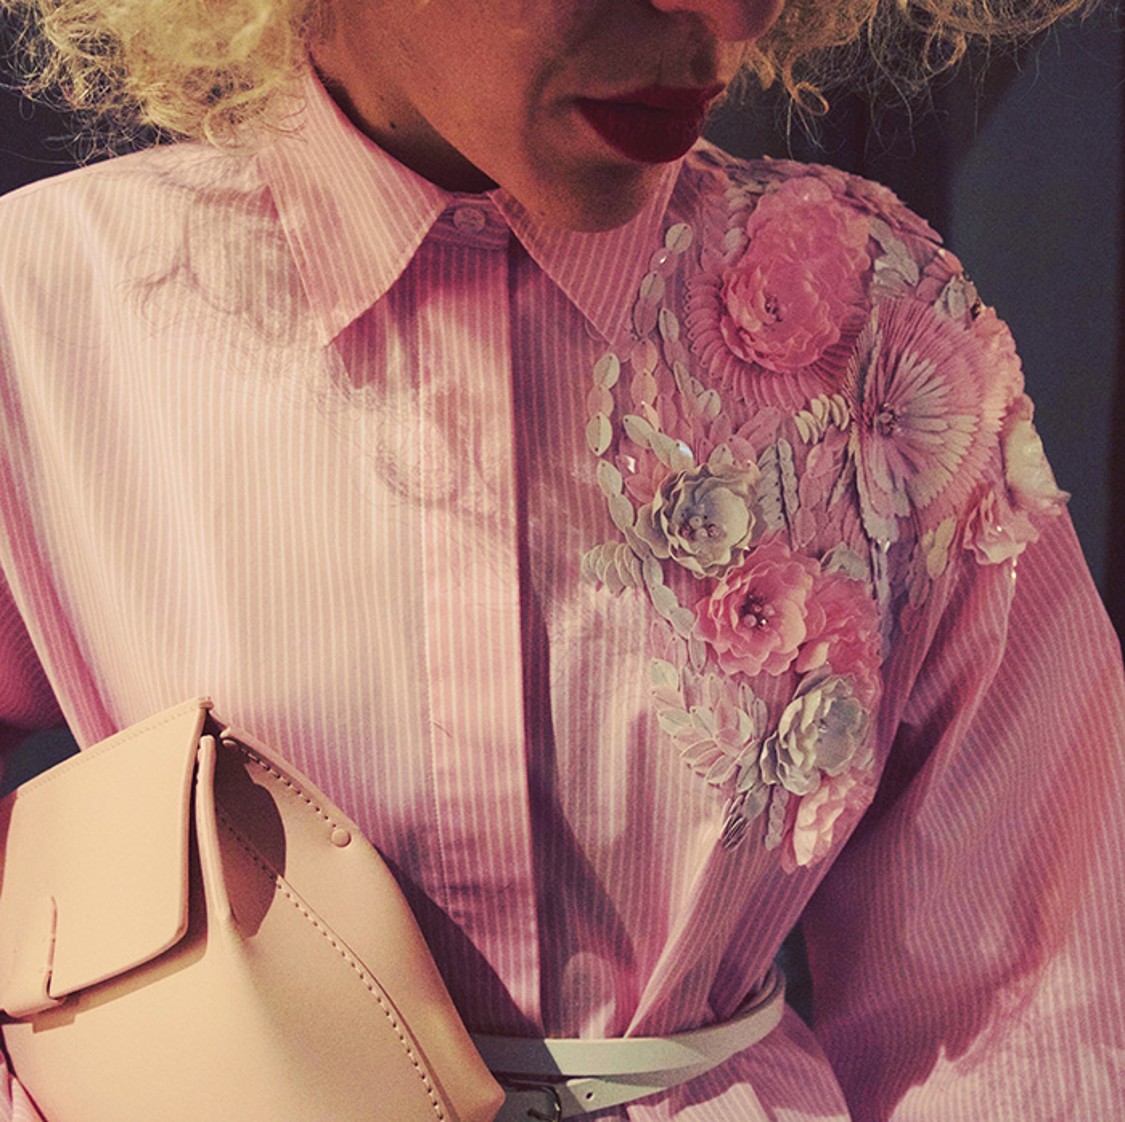 shop MSGM Saldi Camicie: Camicia MSGM, rosa a righe bianche, applicazioni in paillette sulla spalla sinistra, modello classico, più lunga dietro.

Composizione: 72% cotone, 25% poliestere, 3% elastan. number 1191